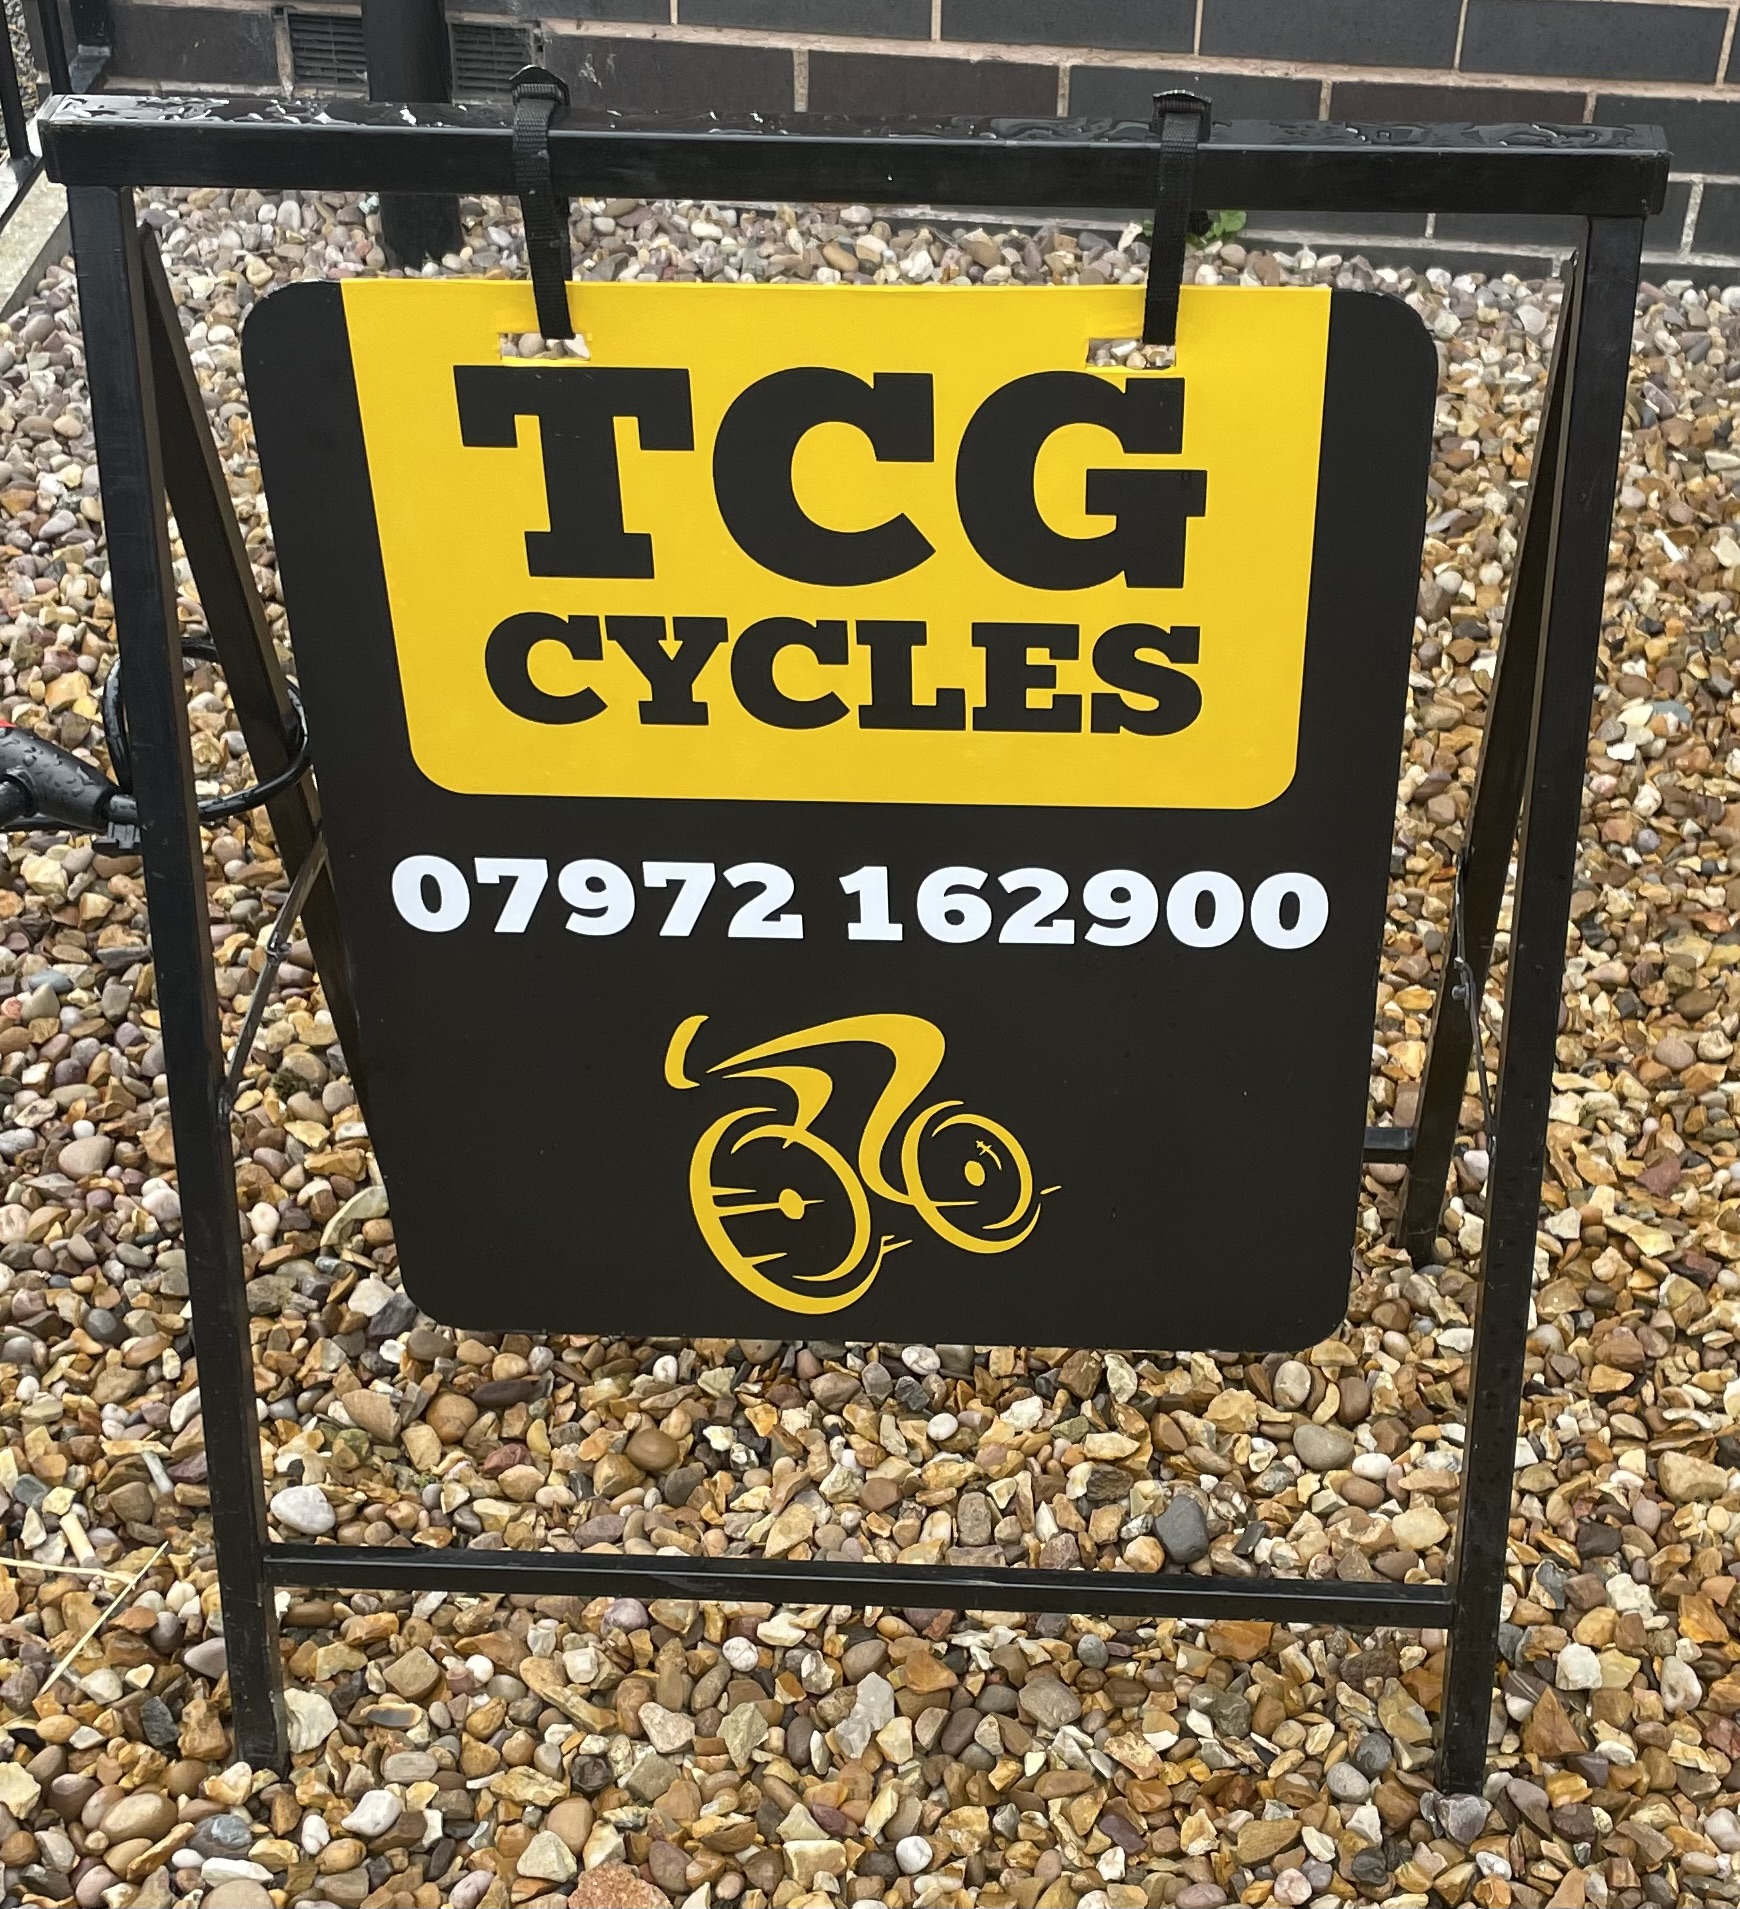 TCG CYCLES